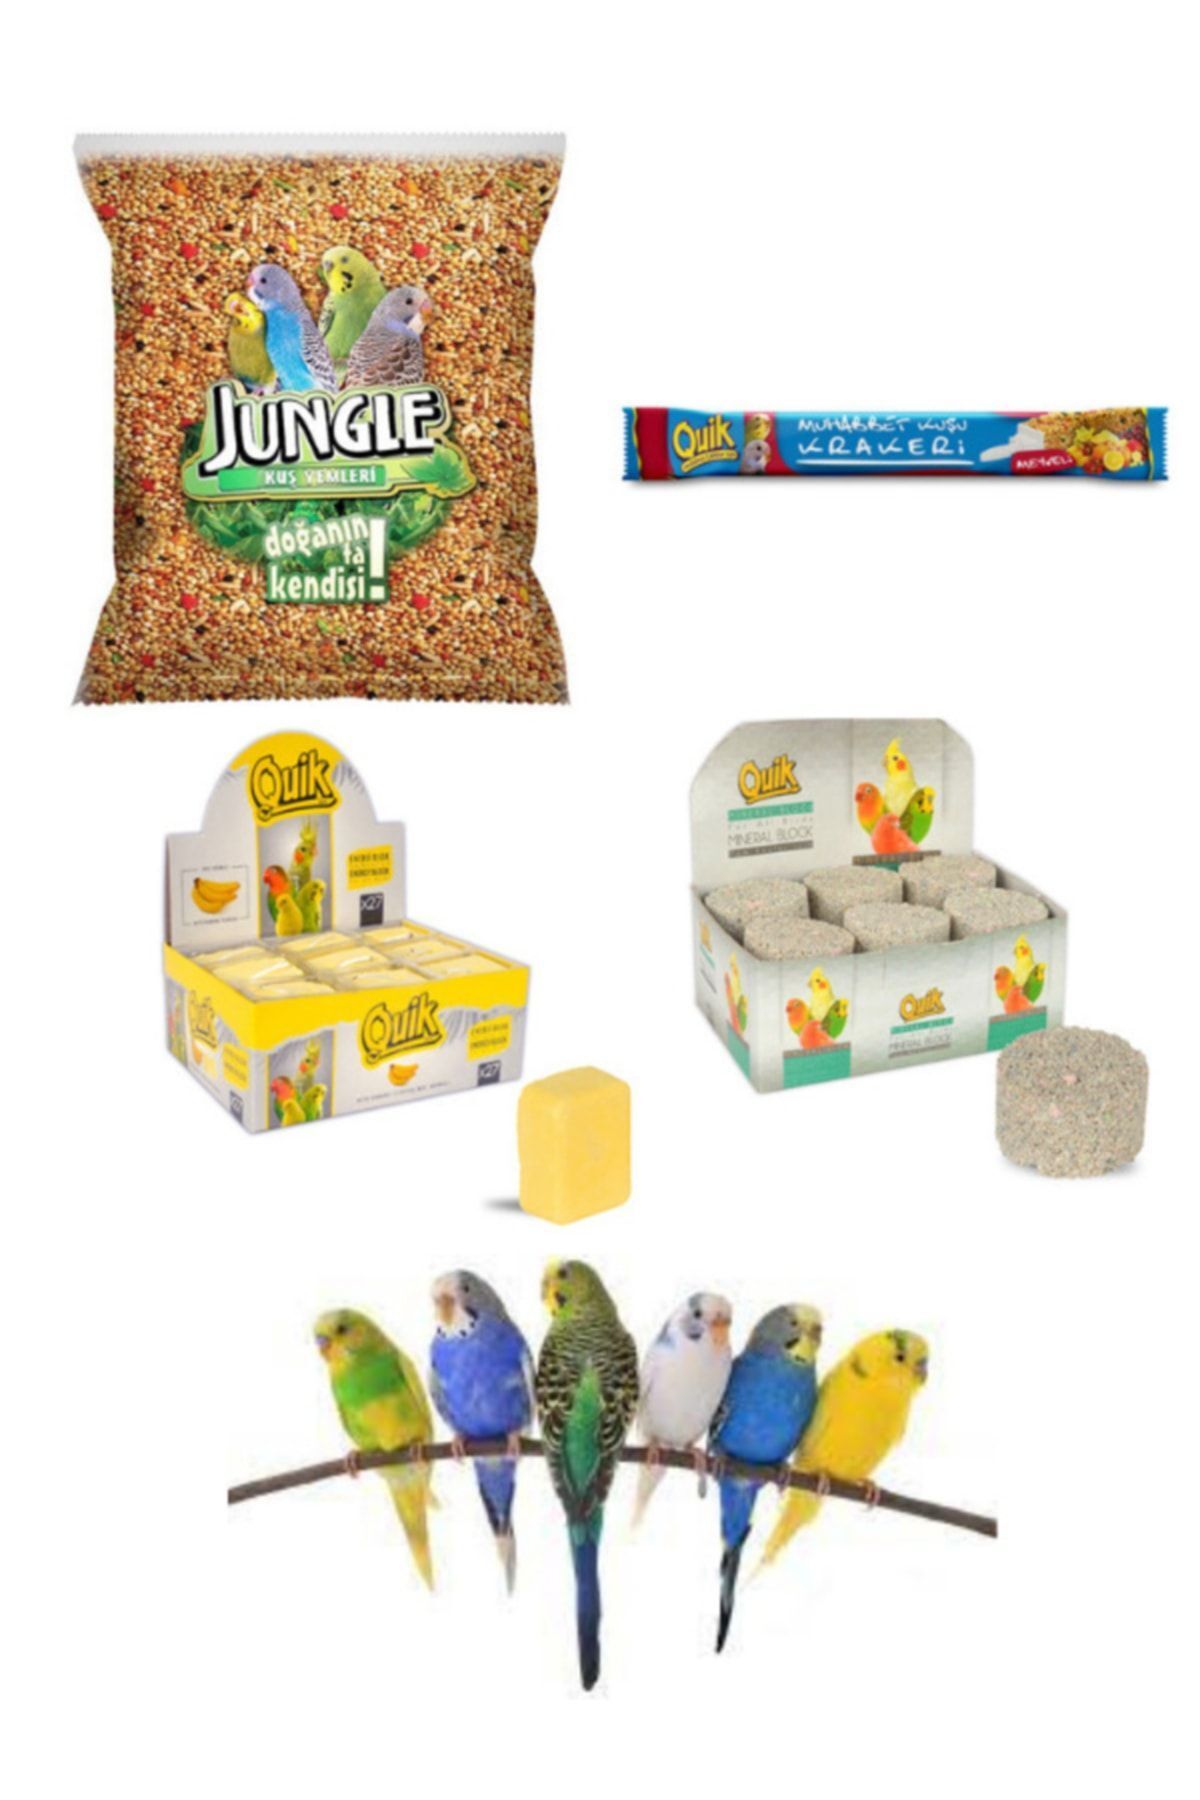 Jungle Muhabbet Kuşu Ihtiyaç Seti Muhabbet Yem+ Guik Meyve Krakeri Enerji Bloğu +mineral Blok)